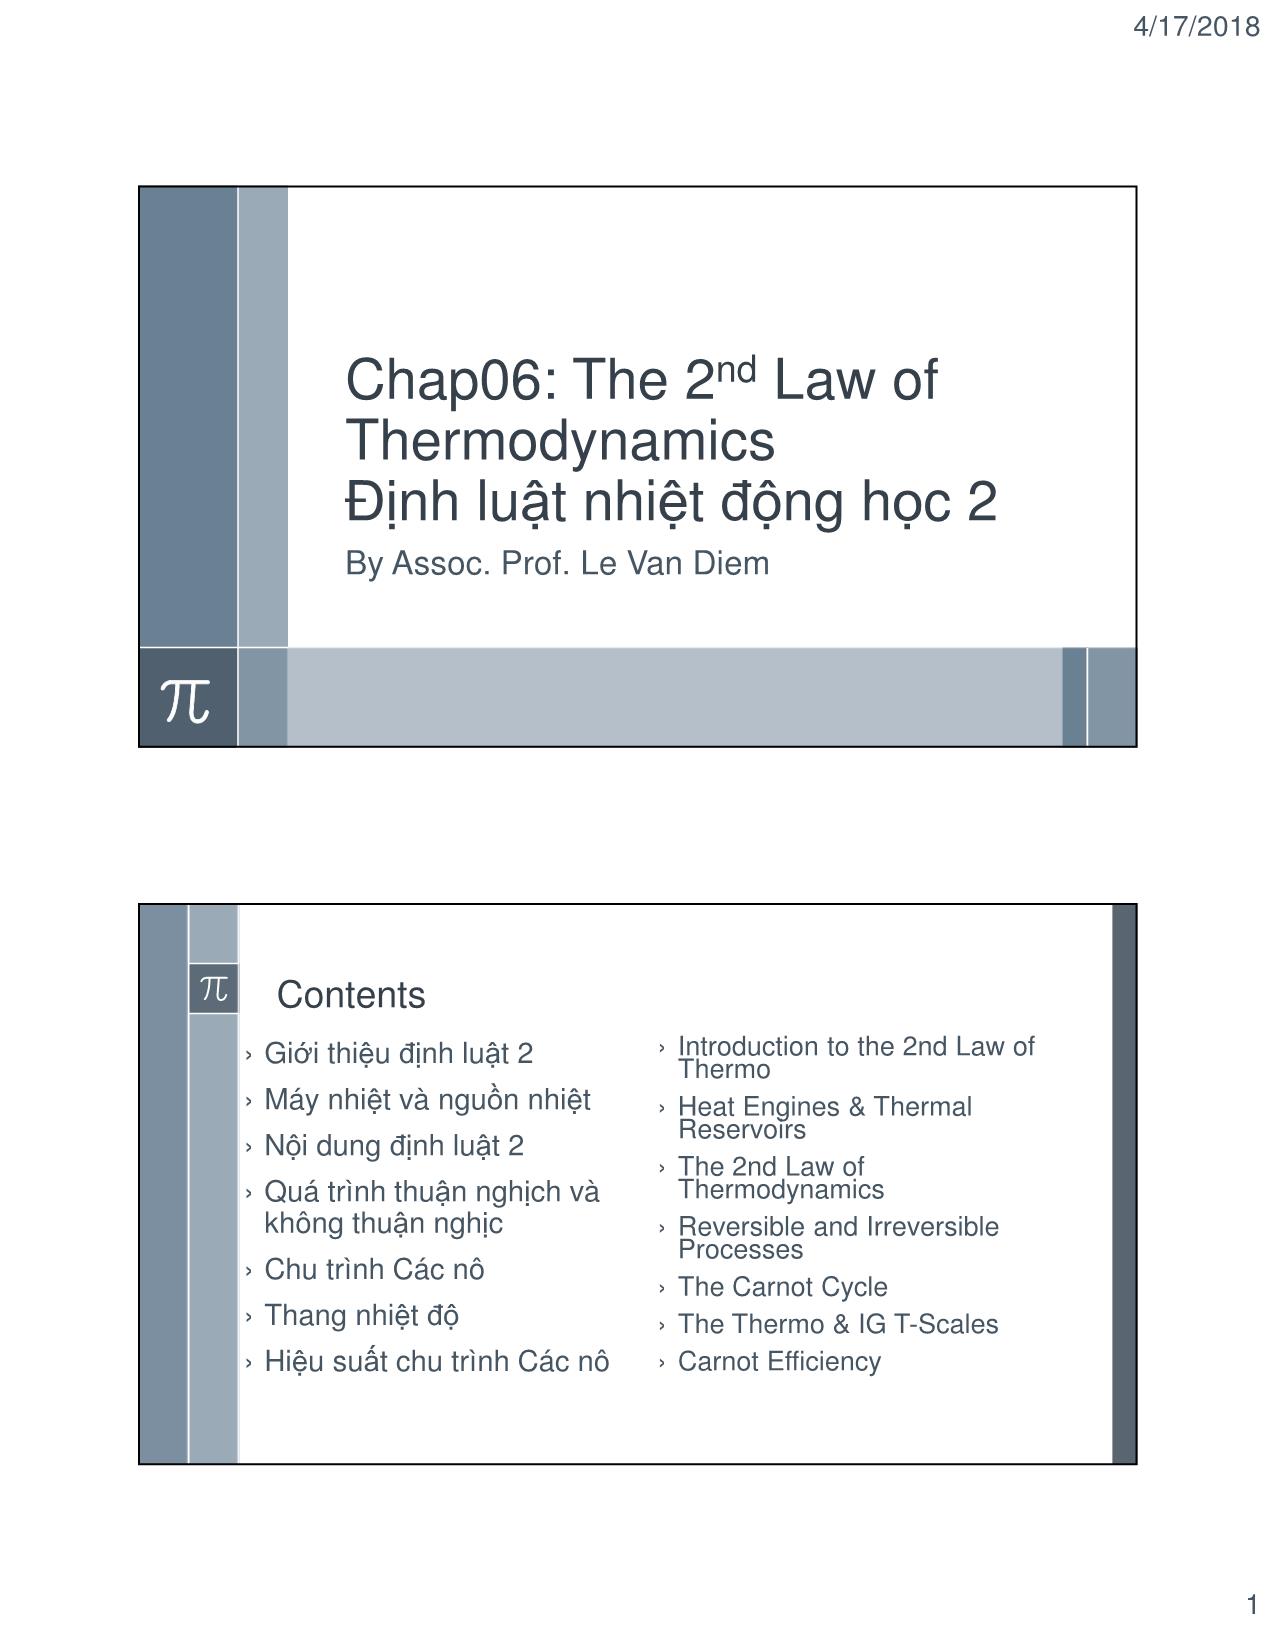 Bài giảng Kỹ thuật nhiệt - Chapter 6: The 2nd Law of Thermodynamics (Định luật nhiệt động học 2) - Lê Văn Điểm trang 1